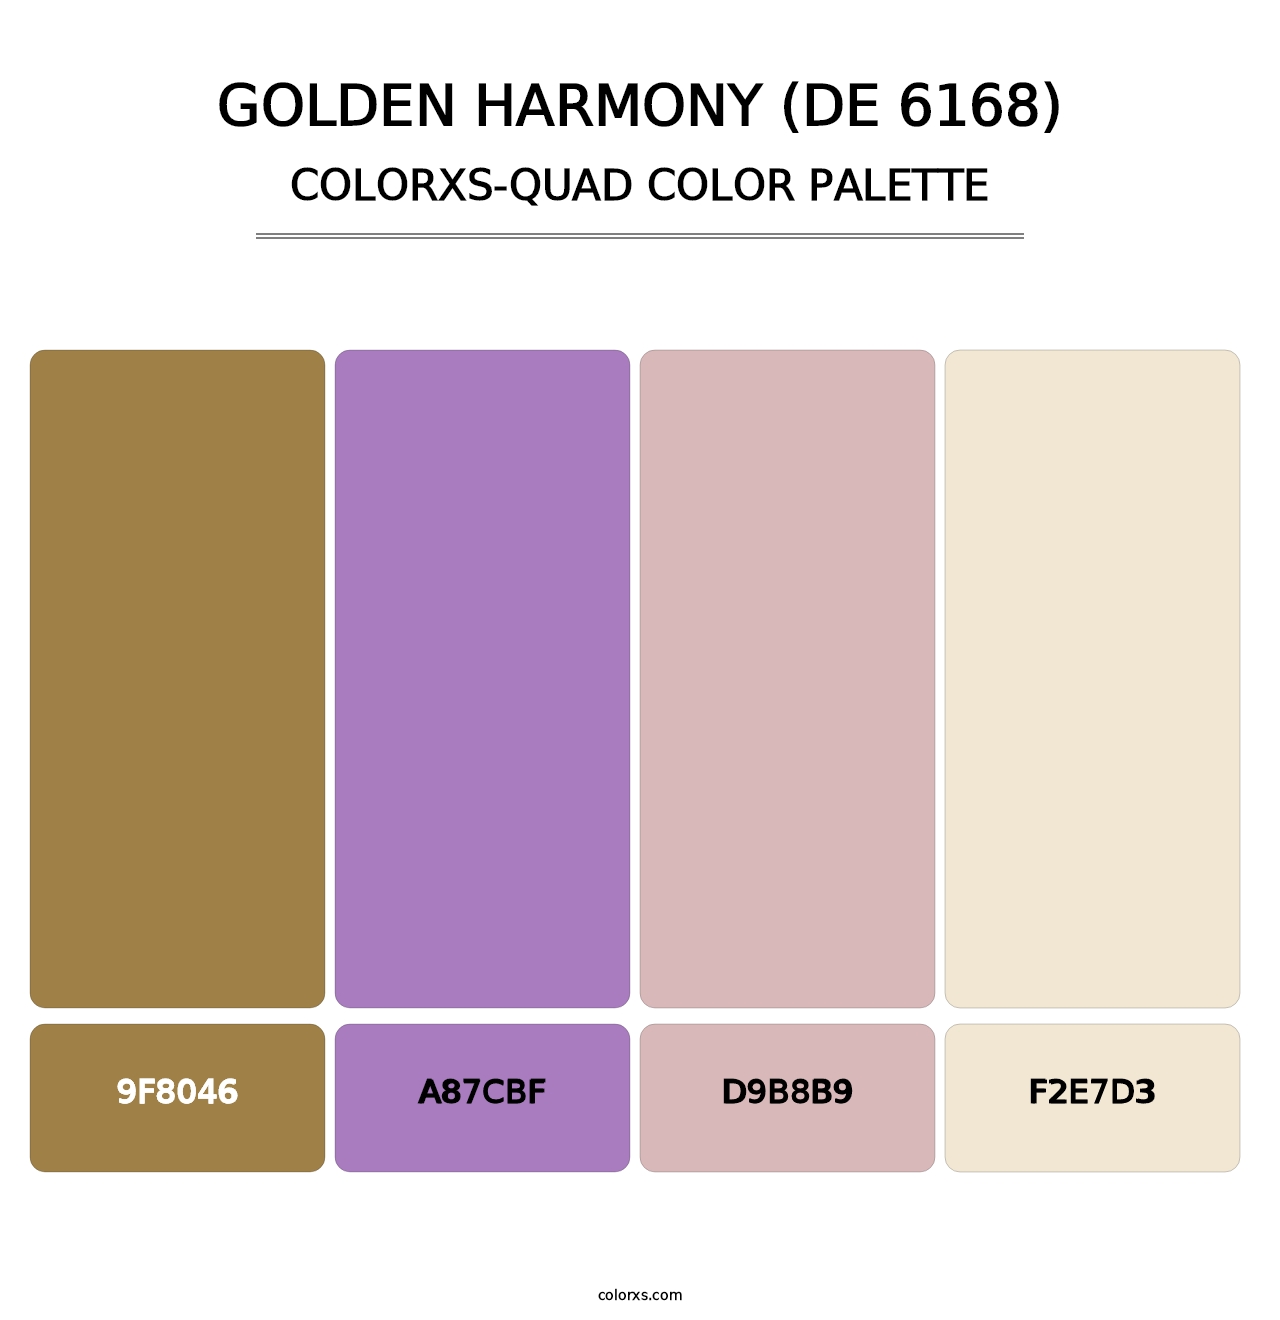 Golden Harmony (DE 6168) - Colorxs Quad Palette